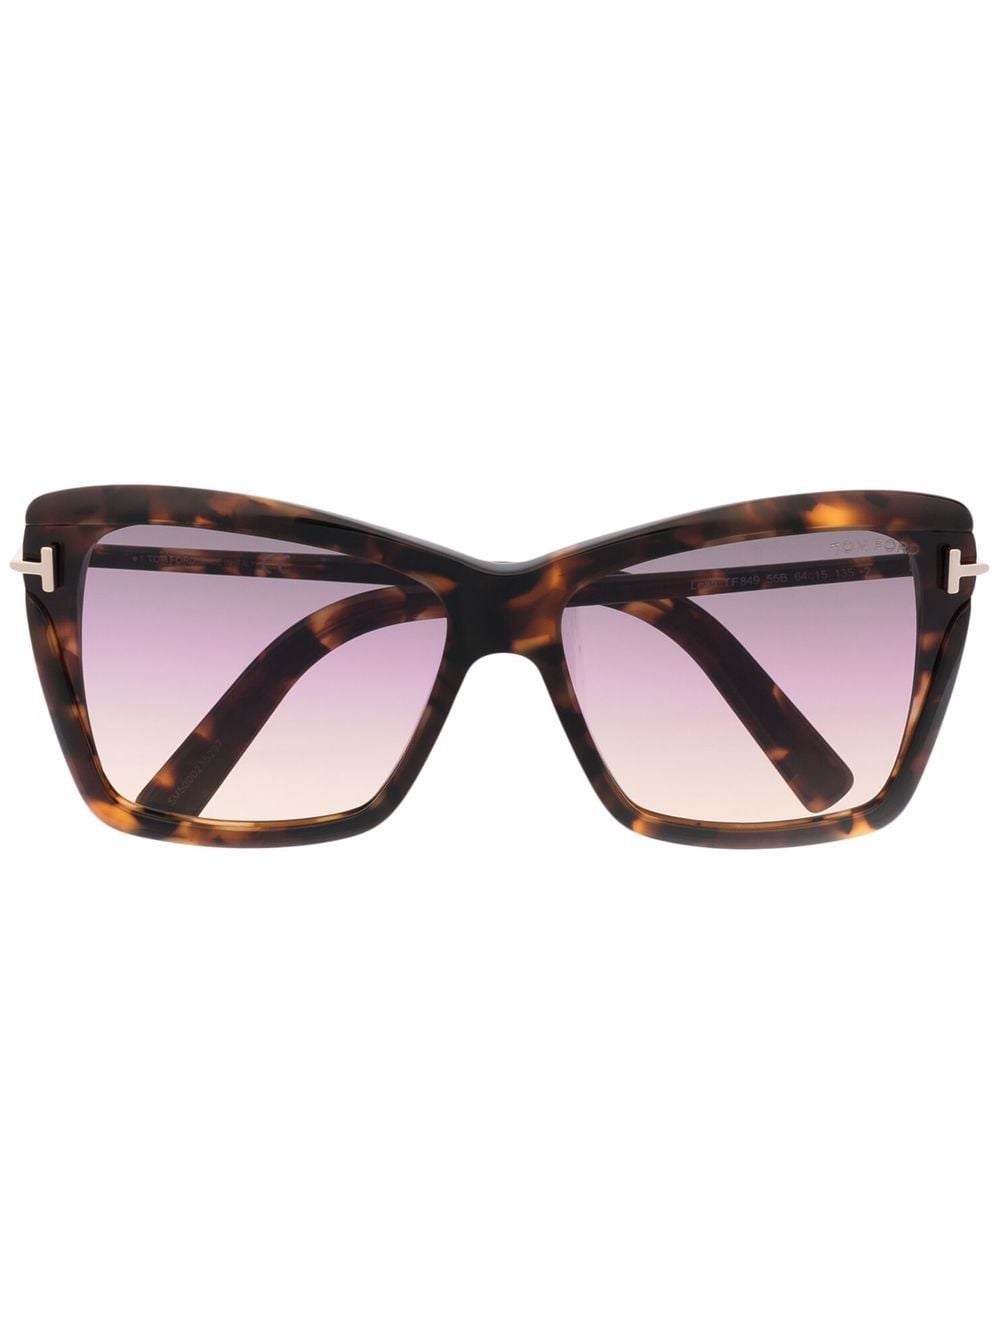 TOM FORD Eyewear Leah TF849 sunglasses - Brown von TOM FORD Eyewear